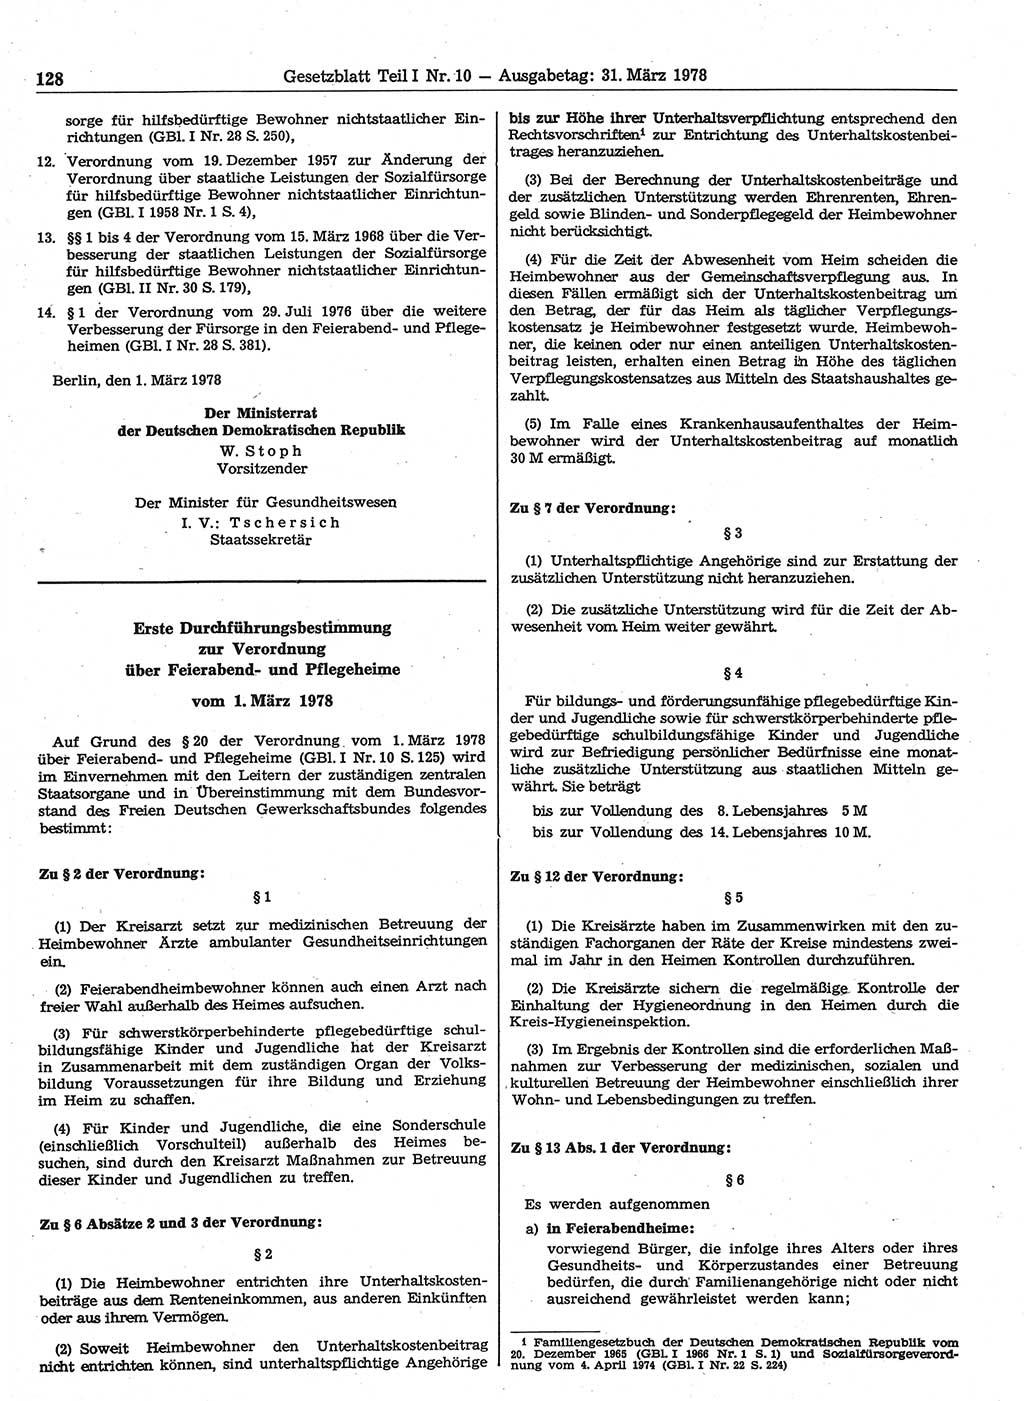 Gesetzblatt (GBl.) der Deutschen Demokratischen Republik (DDR) Teil Ⅰ 1978, Seite 128 (GBl. DDR Ⅰ 1978, S. 128)